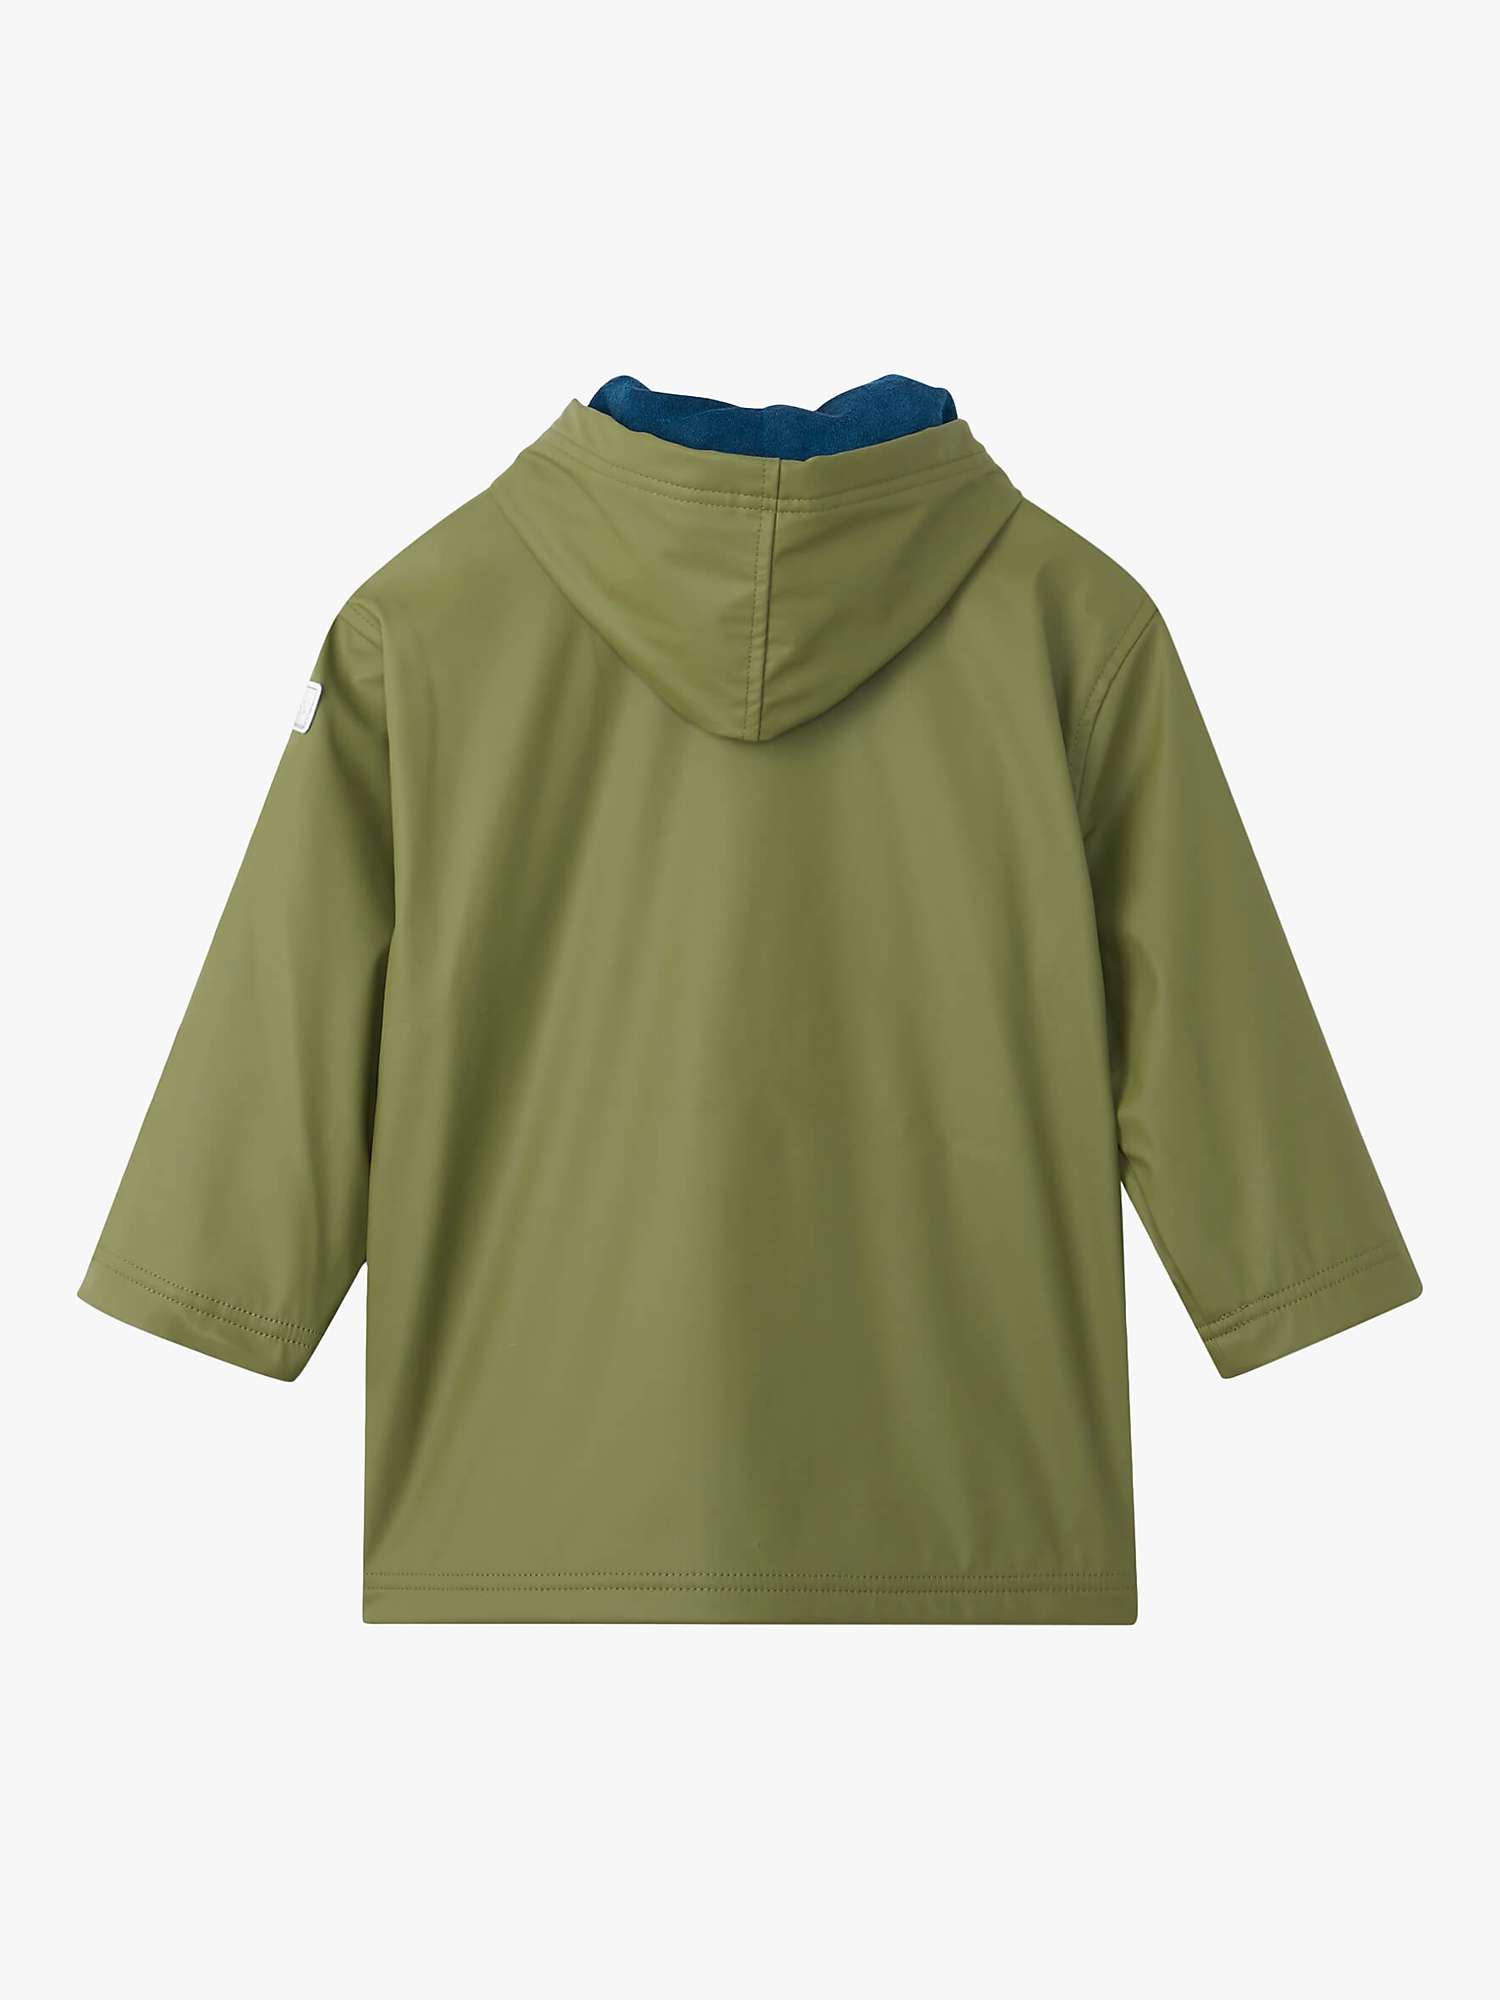 Buy Hatley Kids' Forest Splash Zip Up Hooded Jacket, Loden Green Online at johnlewis.com